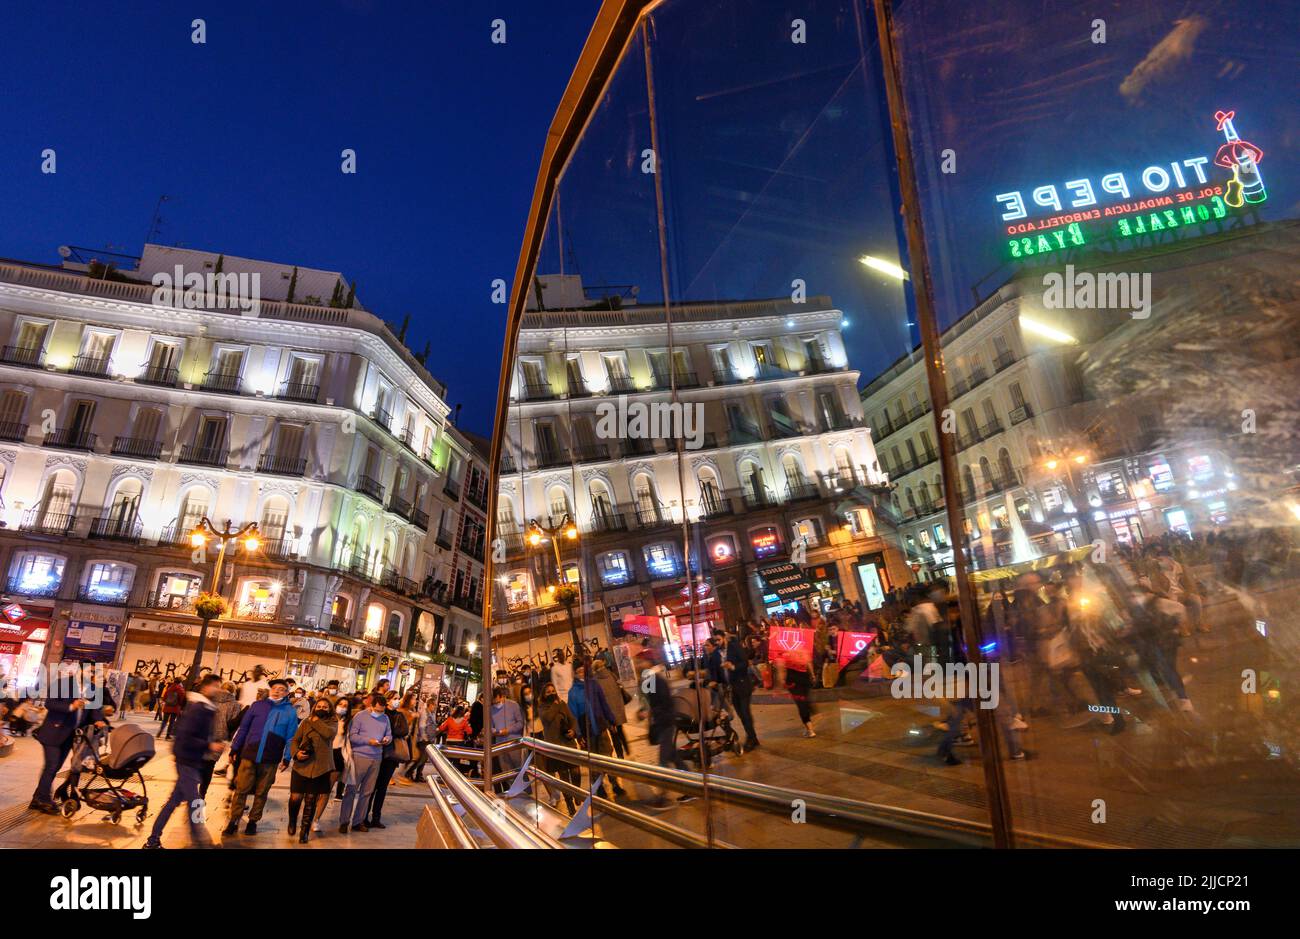 Multitudes en la Puerta del Sol, por la noche con el famoso cartel publicitario Tio Pepe reflejado en las ventanas de la estación de metro Sol. Madrid, España. Foto de stock